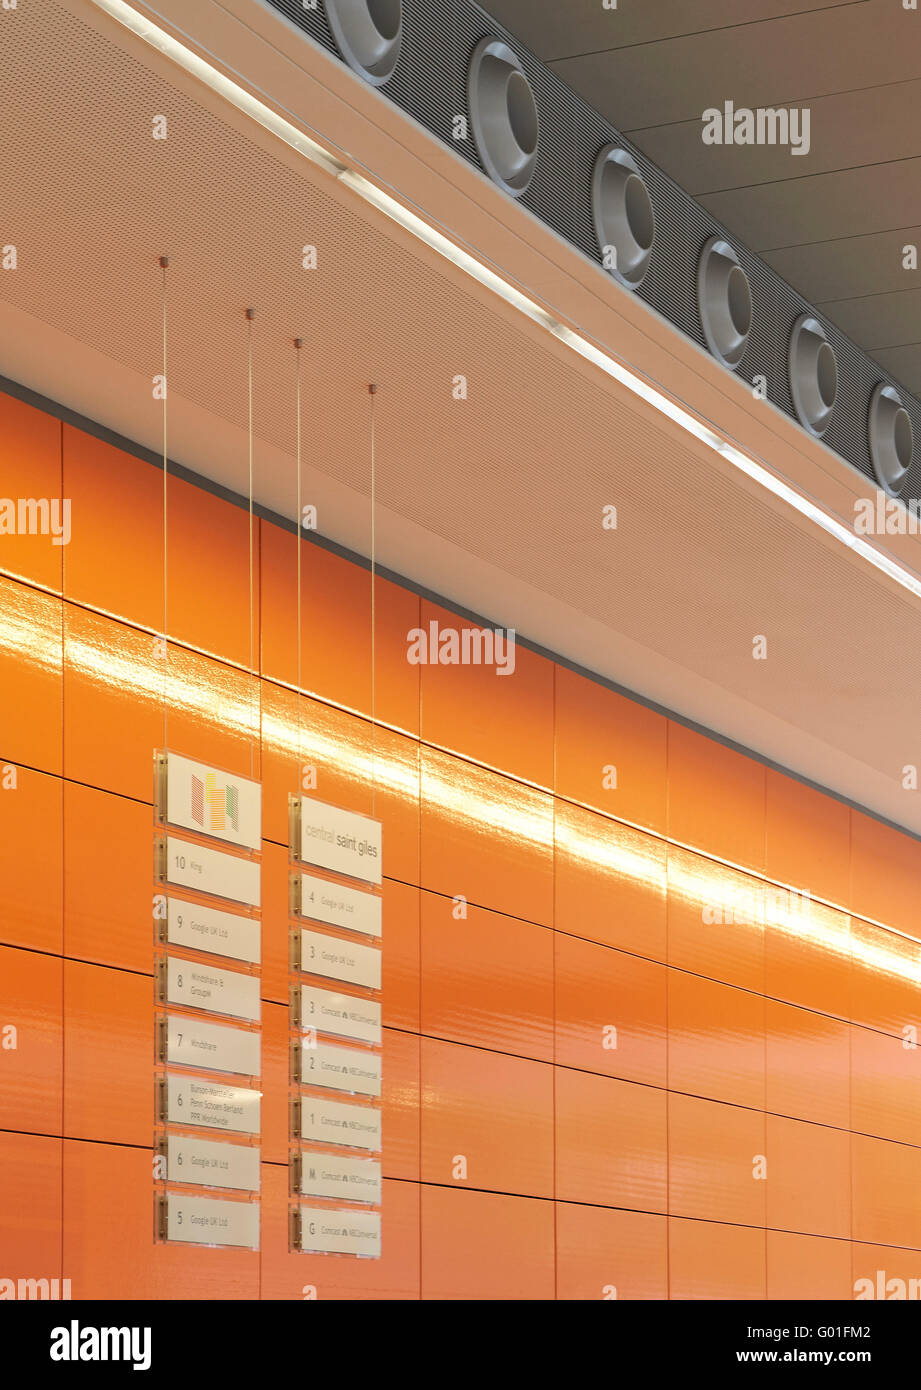 Dettaglio di iconico di colore arancione di piastrelle di ceramica. Central Saint Giles, Londra, Regno Unito. Architetto: Renzo Piano Building Workshop, 2015. Foto Stock